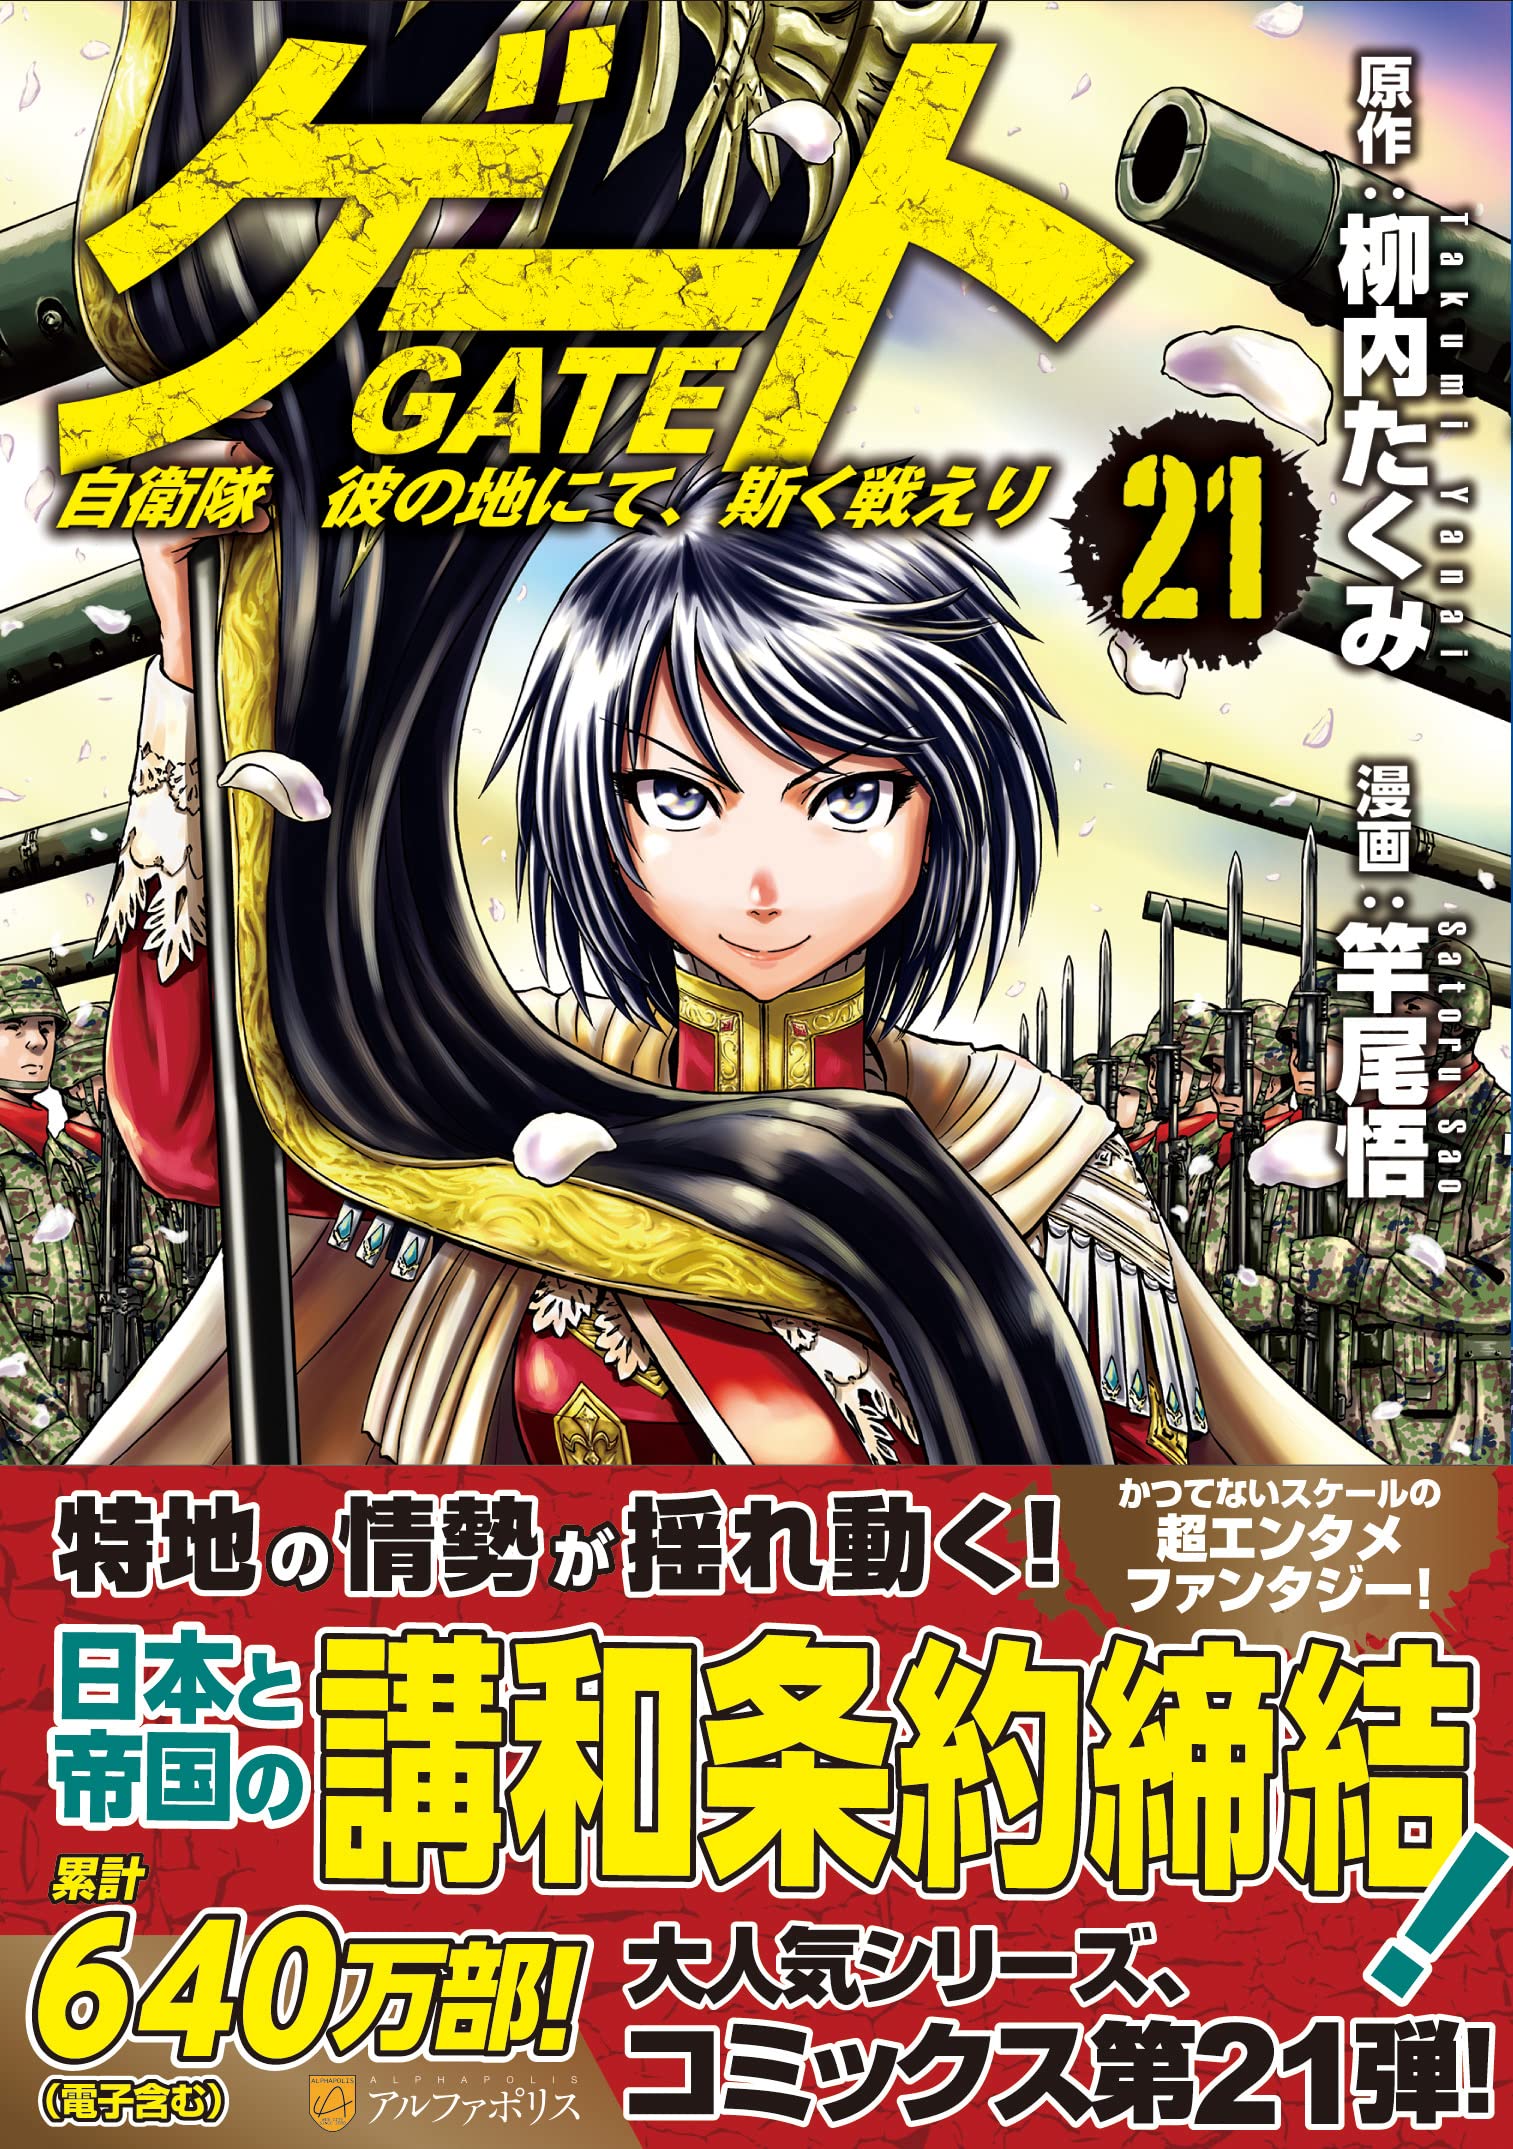 Gate Jieitai Kanochi Nite Kaku Tatakaeri Season 1 & 2 Japanese